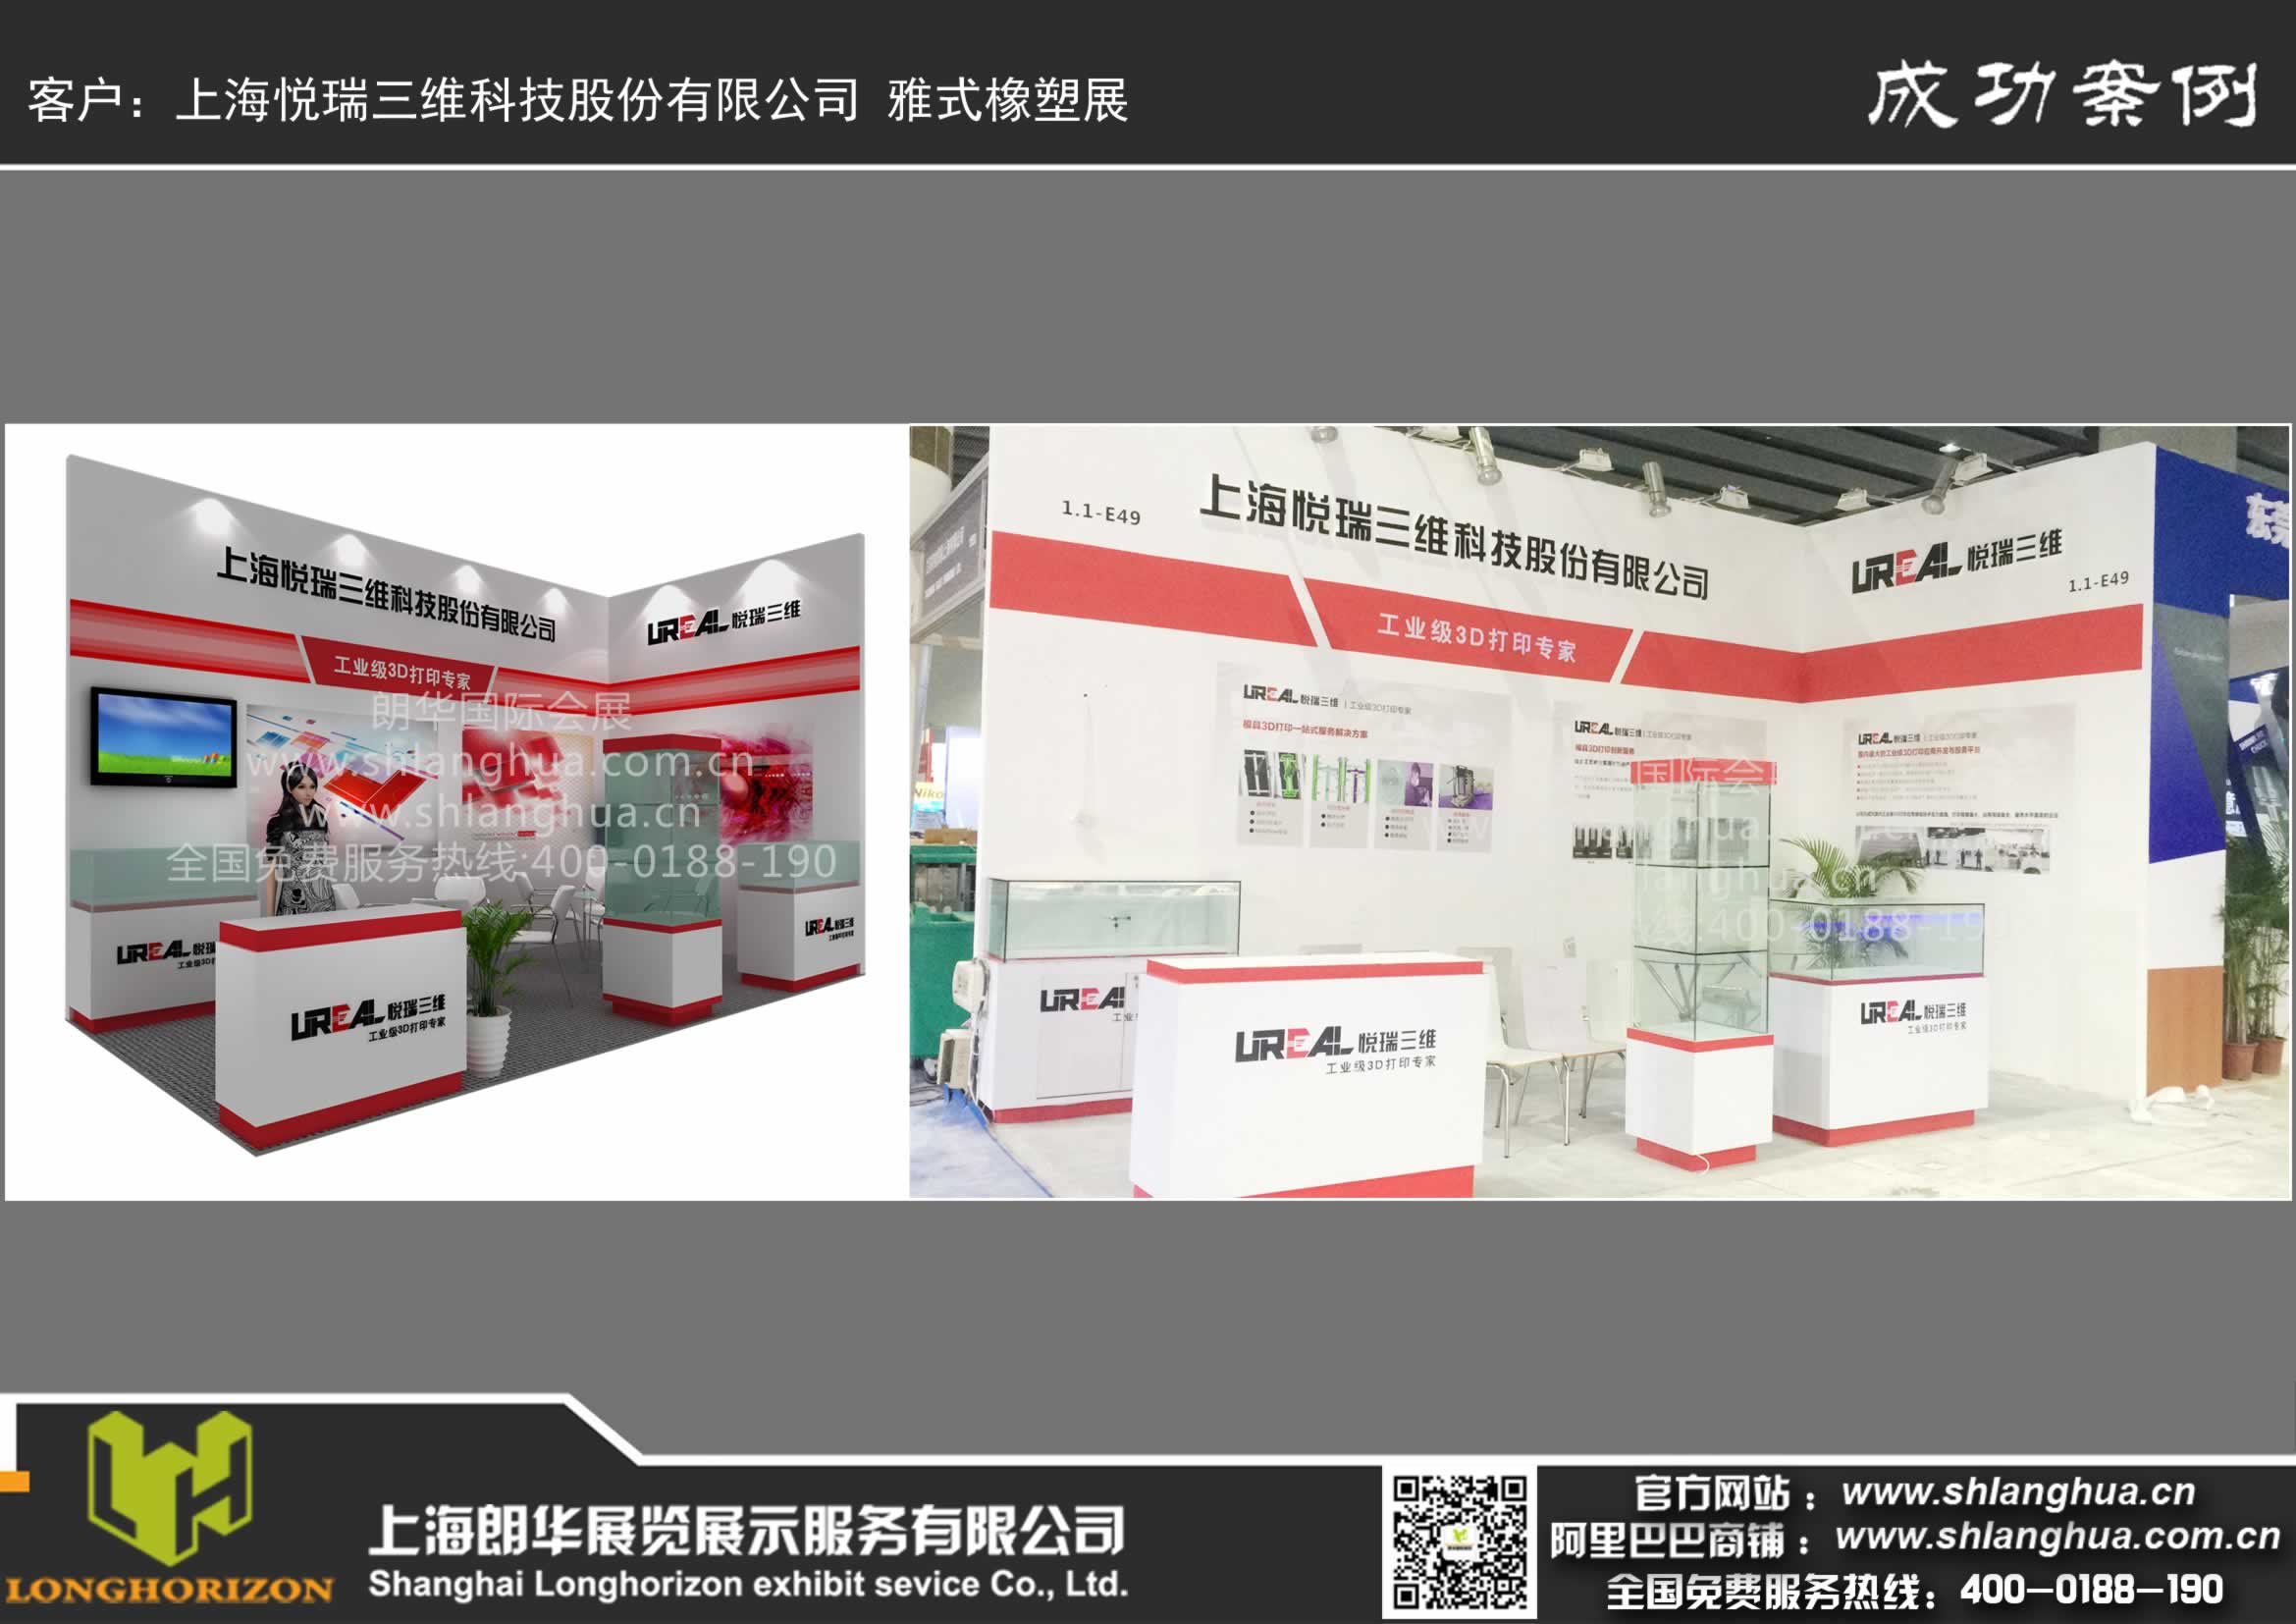 上海悦瑞三维科技股份有限公司 雅式橡塑展